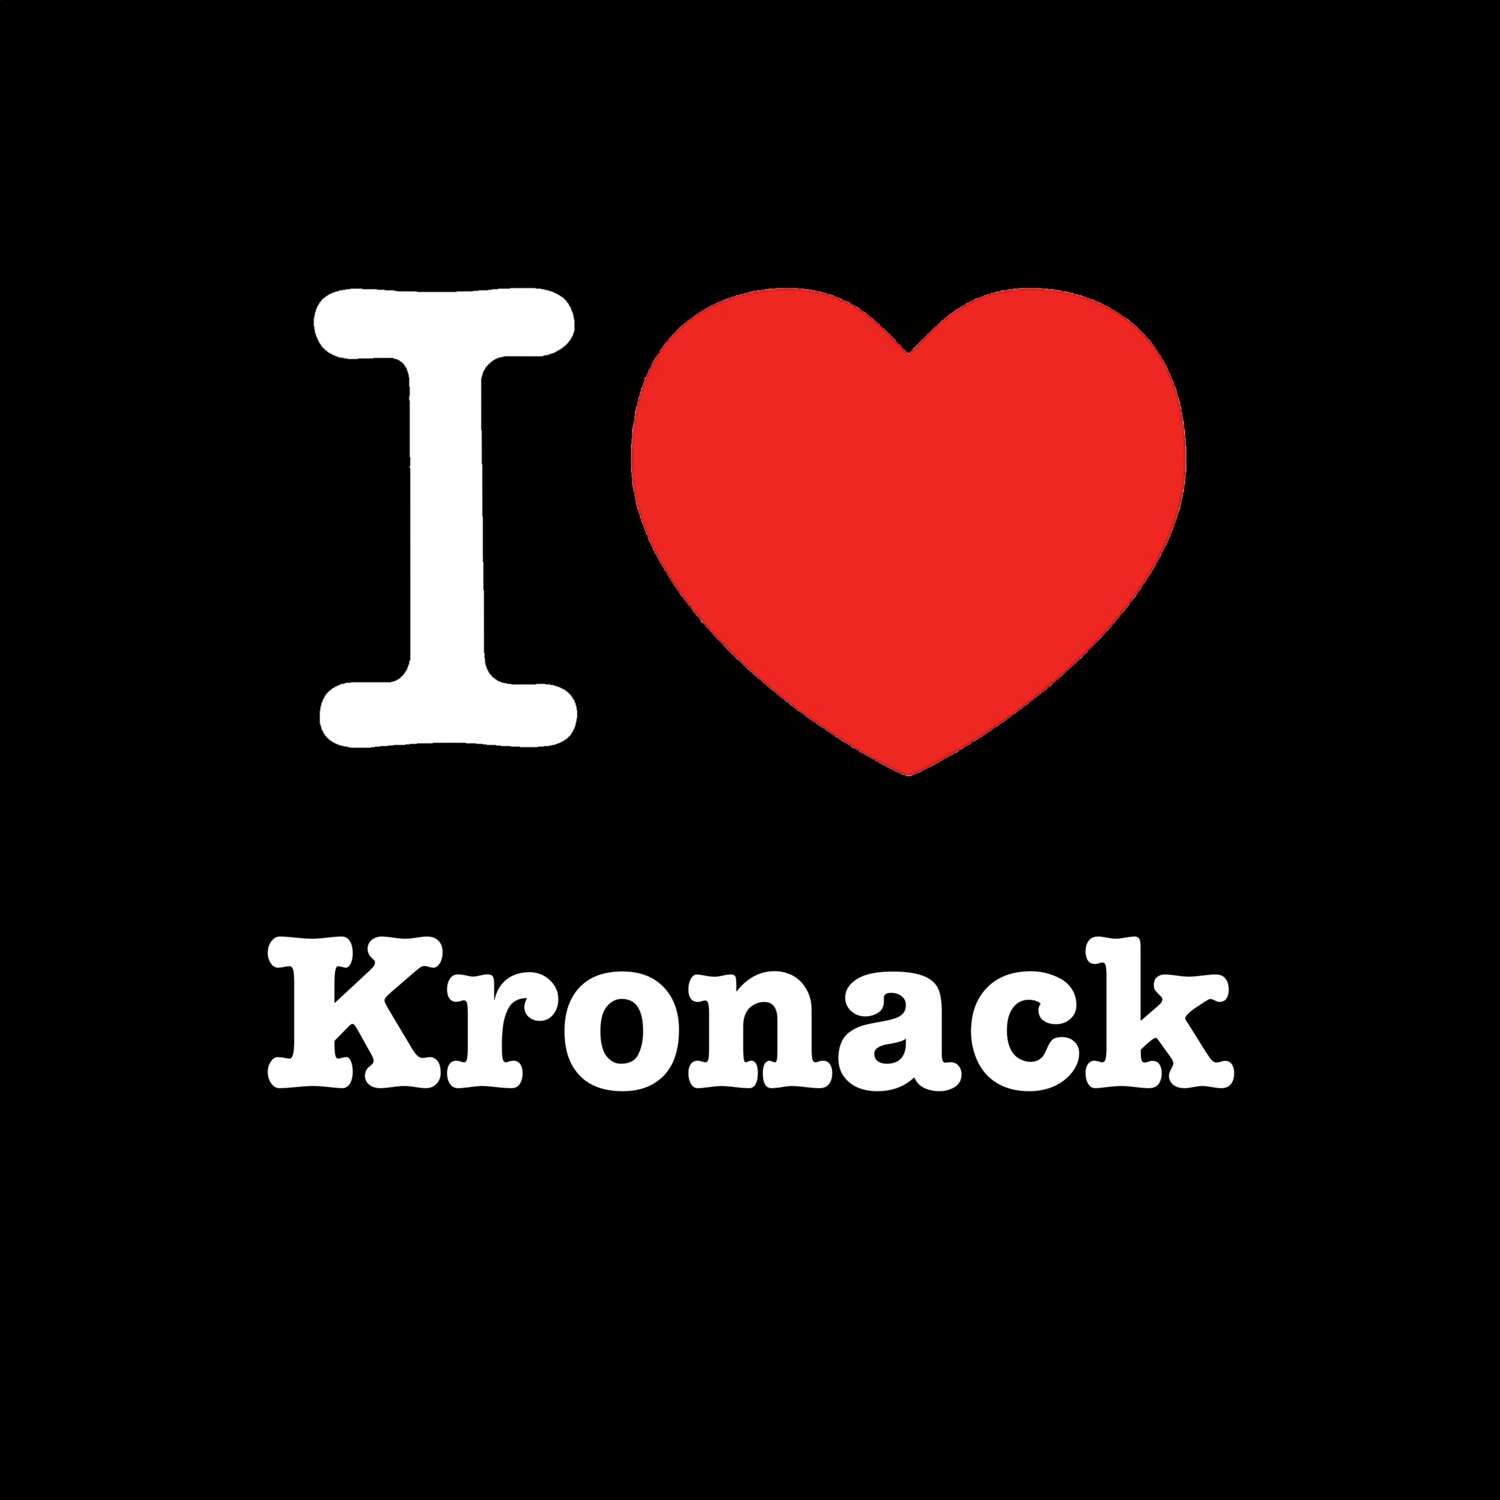 Kronack T-Shirt »I love«